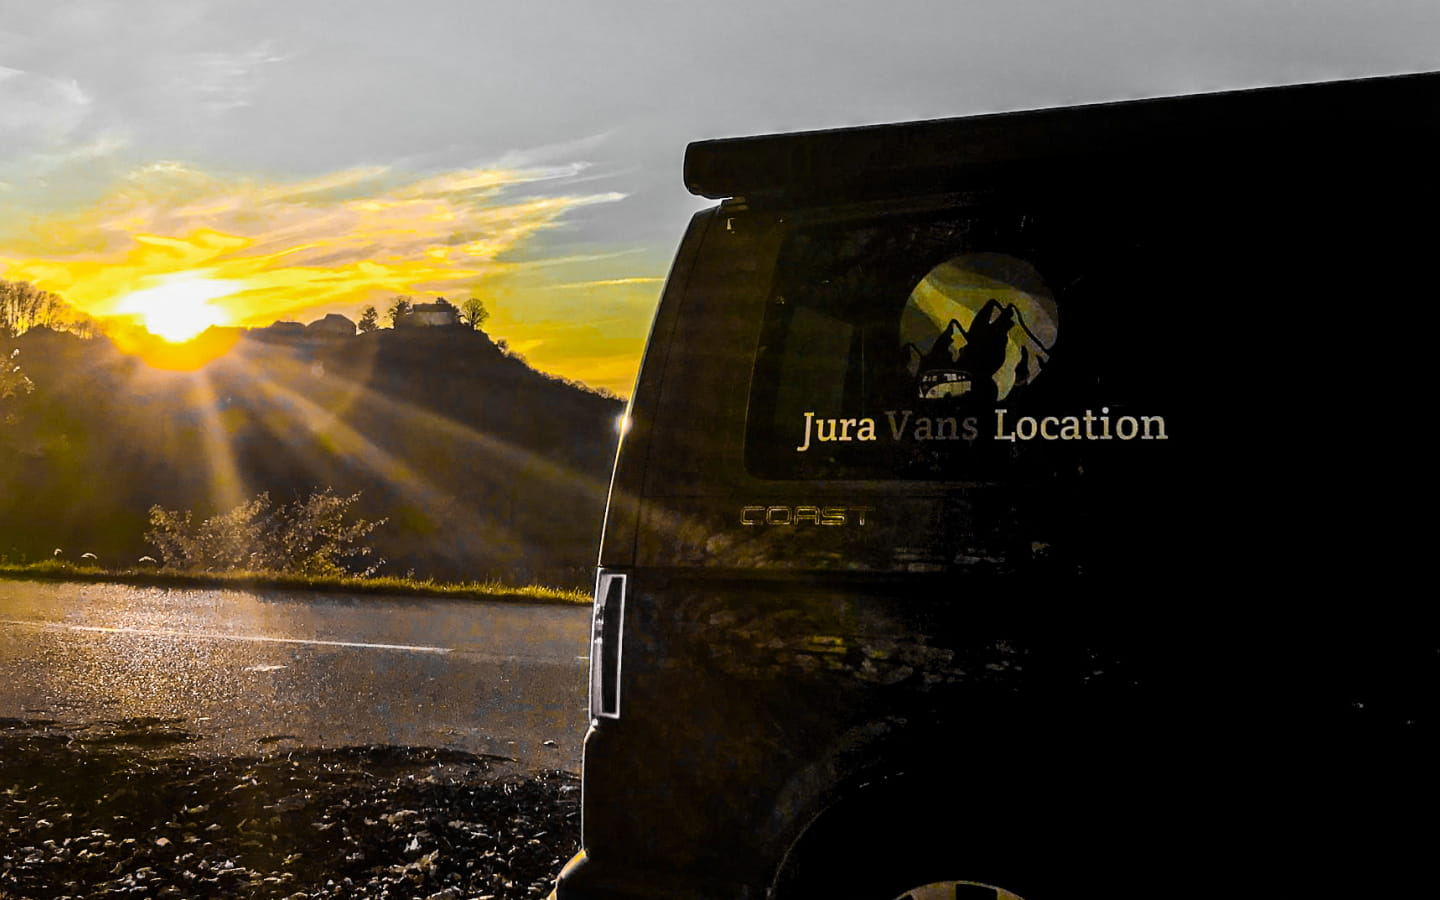 Jura Vans Location